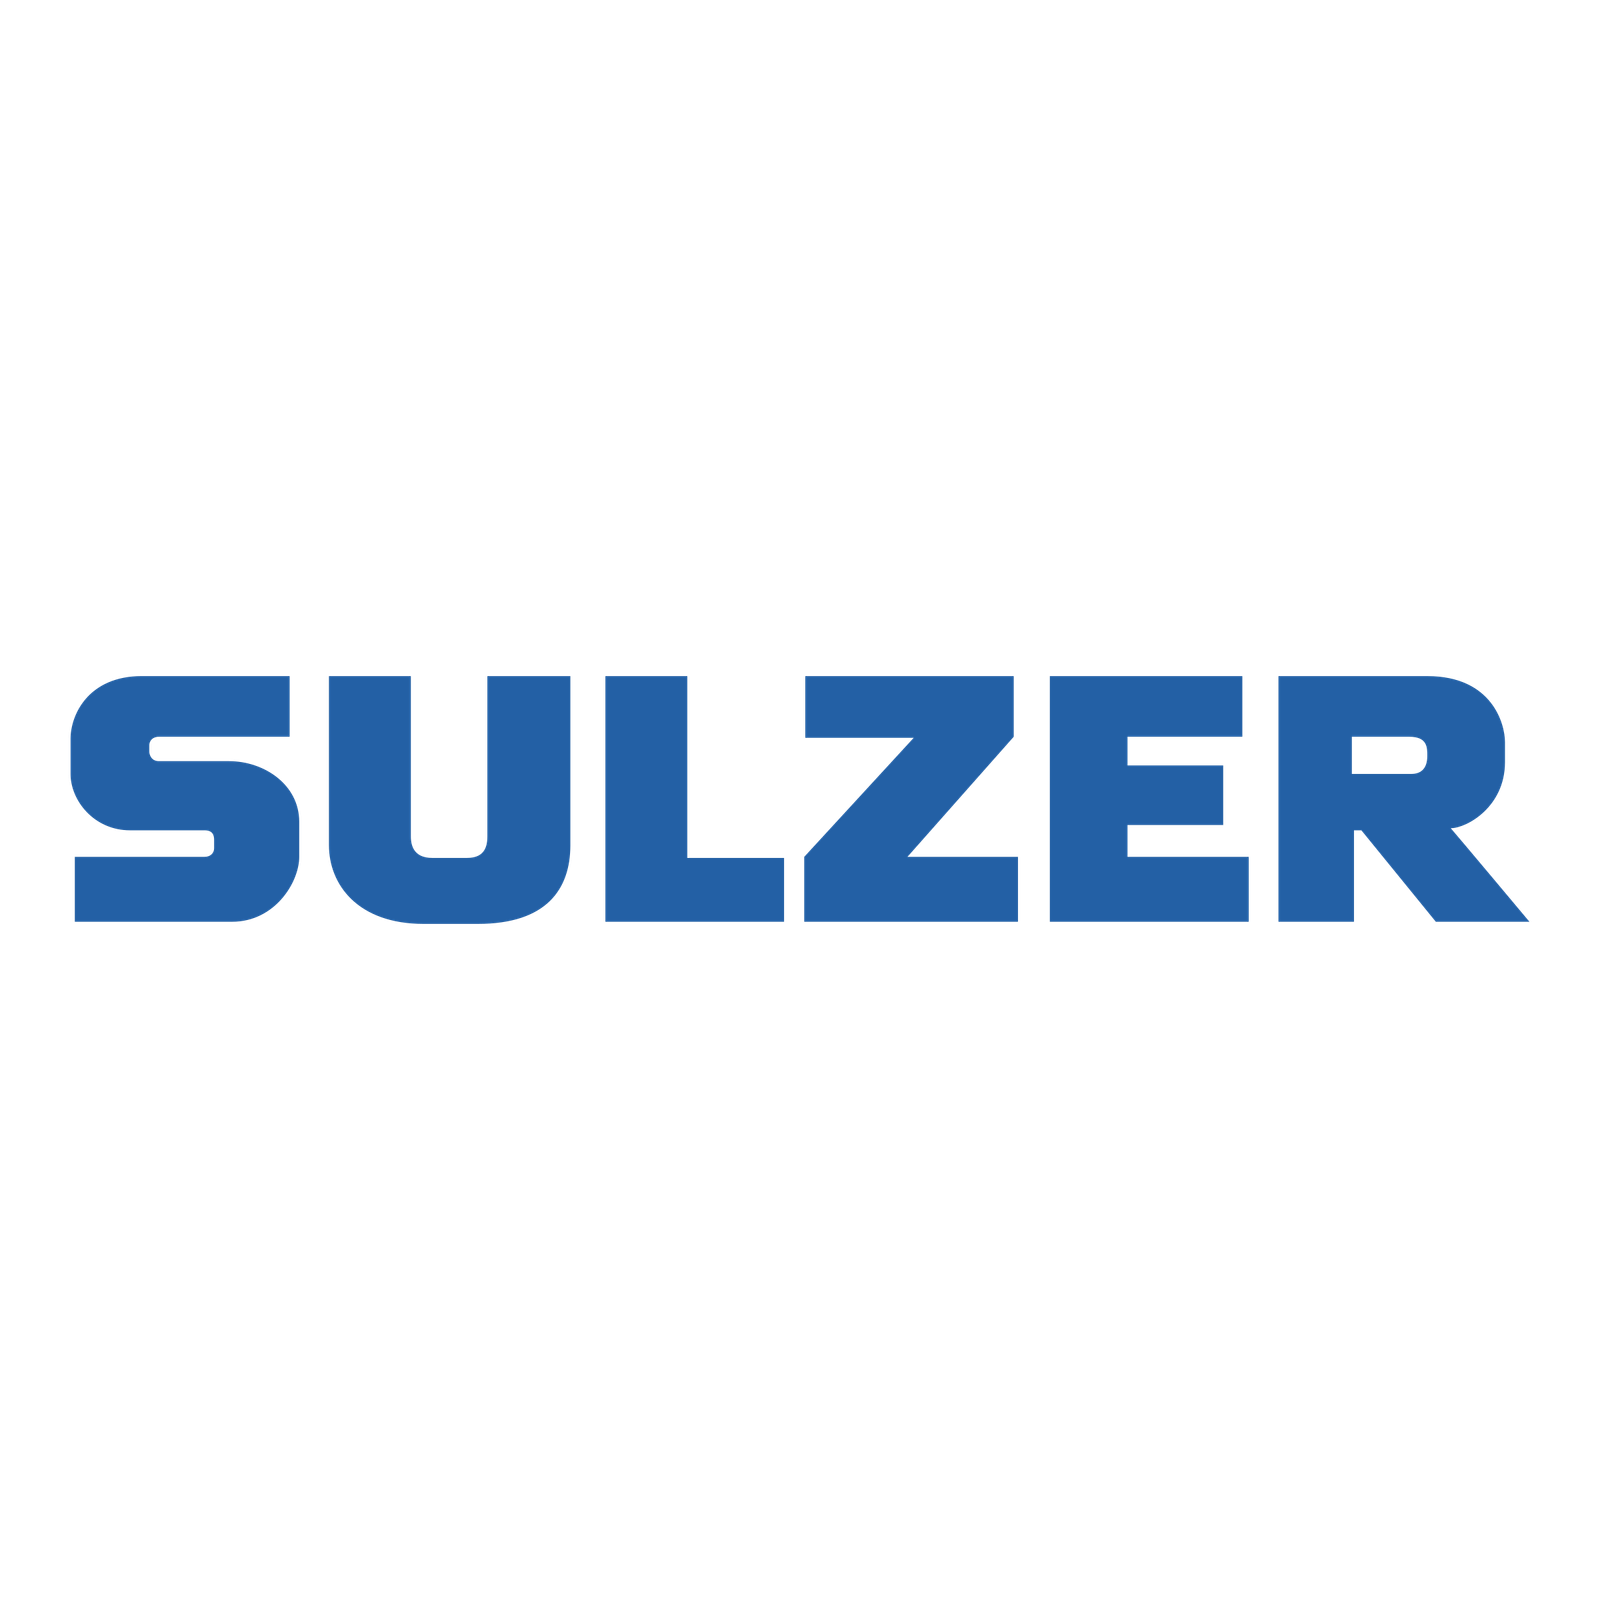 sulzer-logo-png-transparent